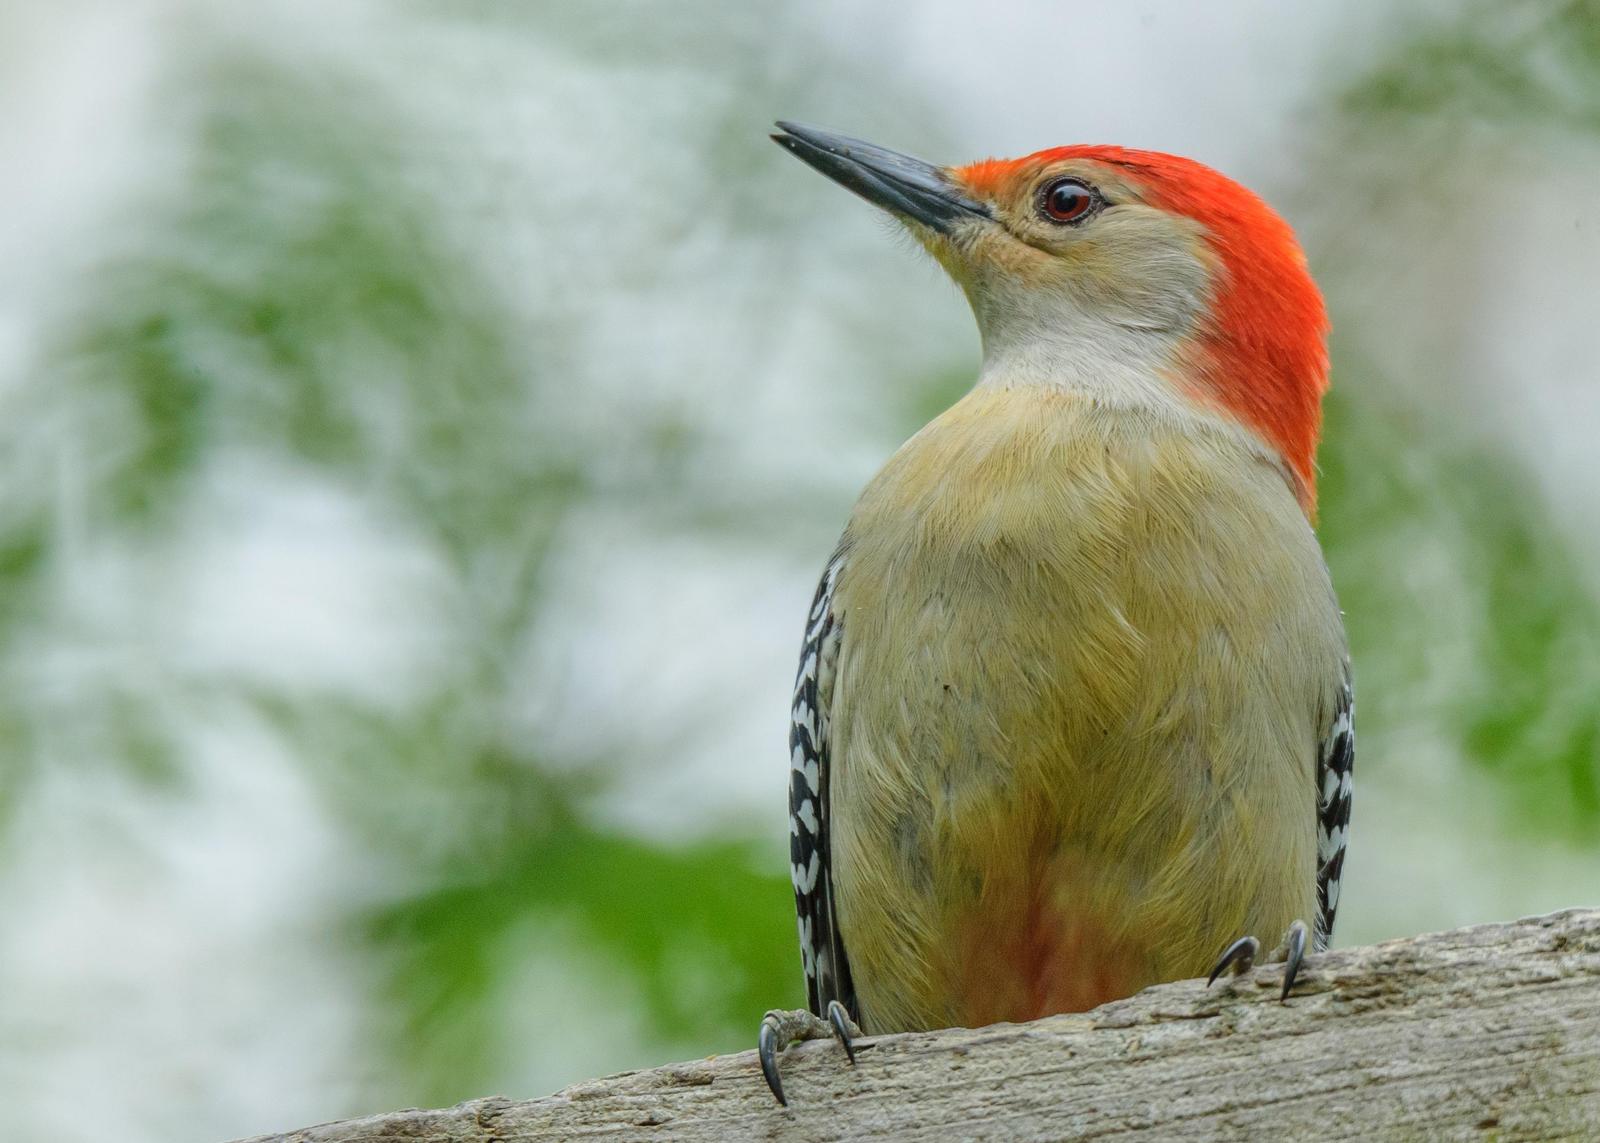 Red-bellied Woodpecker Photo by Keshava Mysore